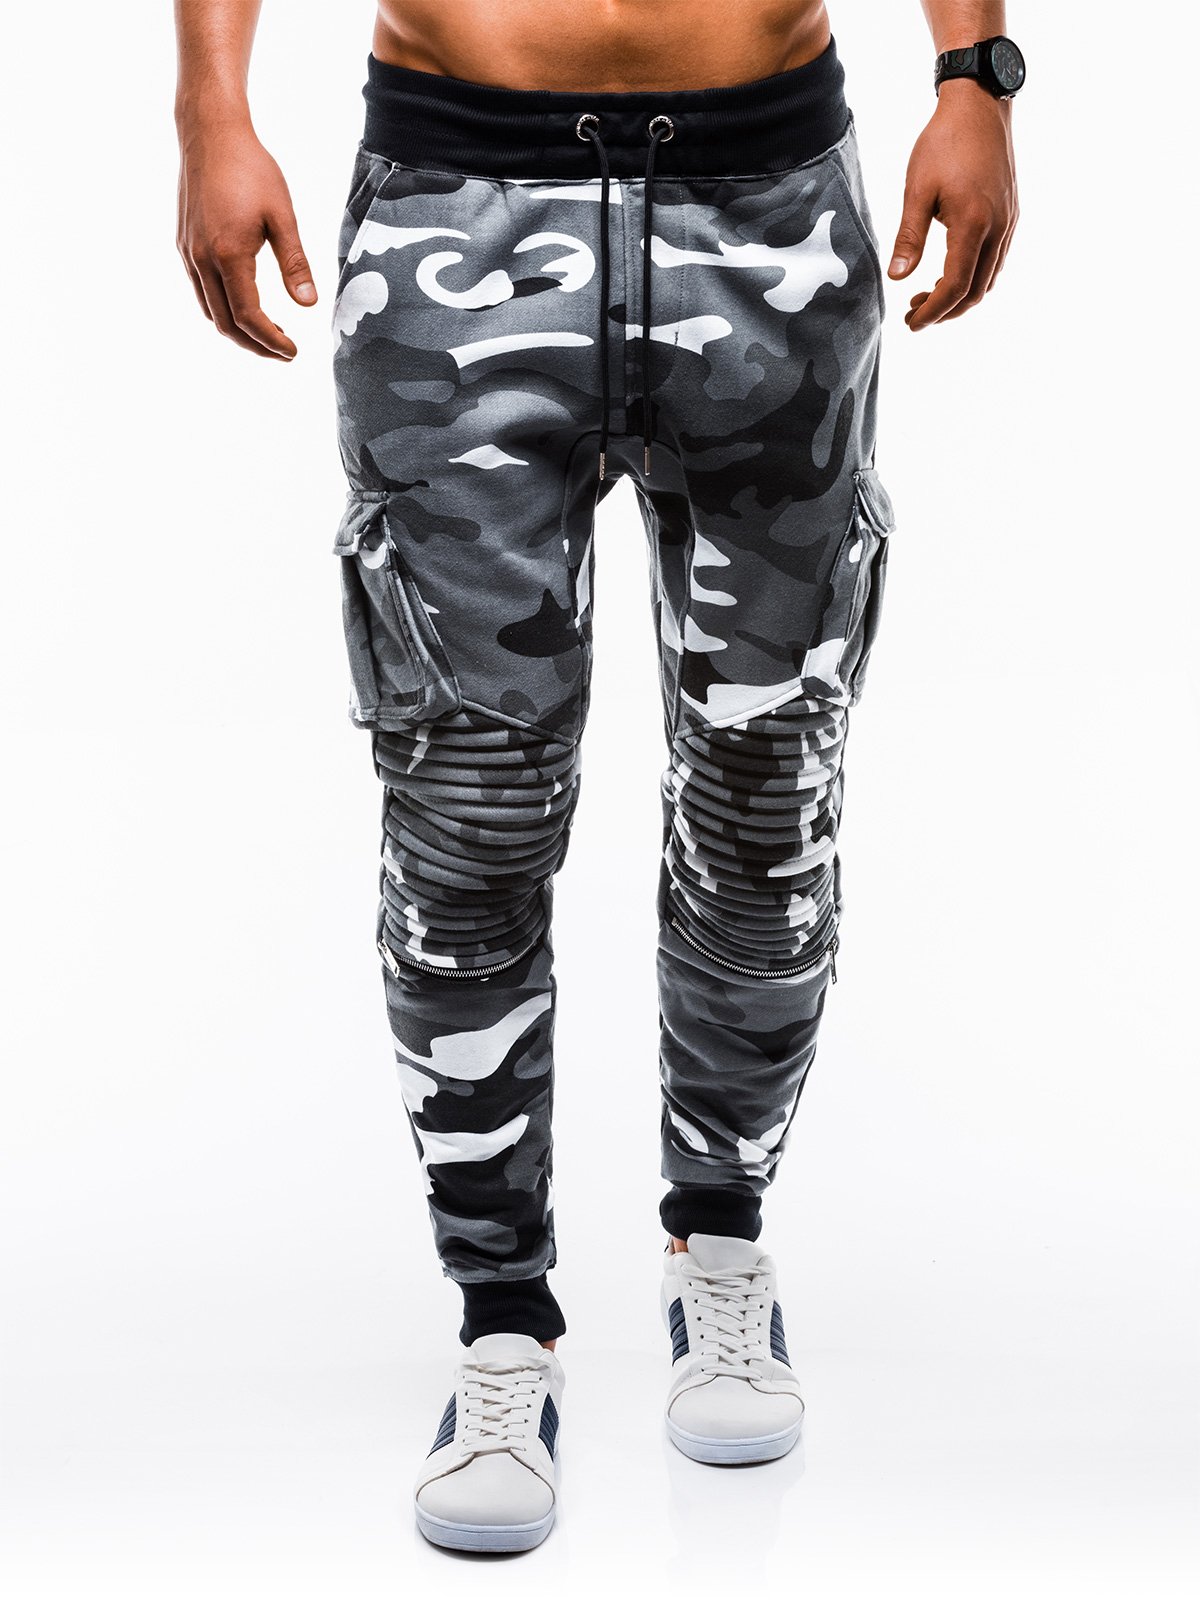 Men's sweatpants P747 - grey/camo | MODONE wholesale - Clothing For Men